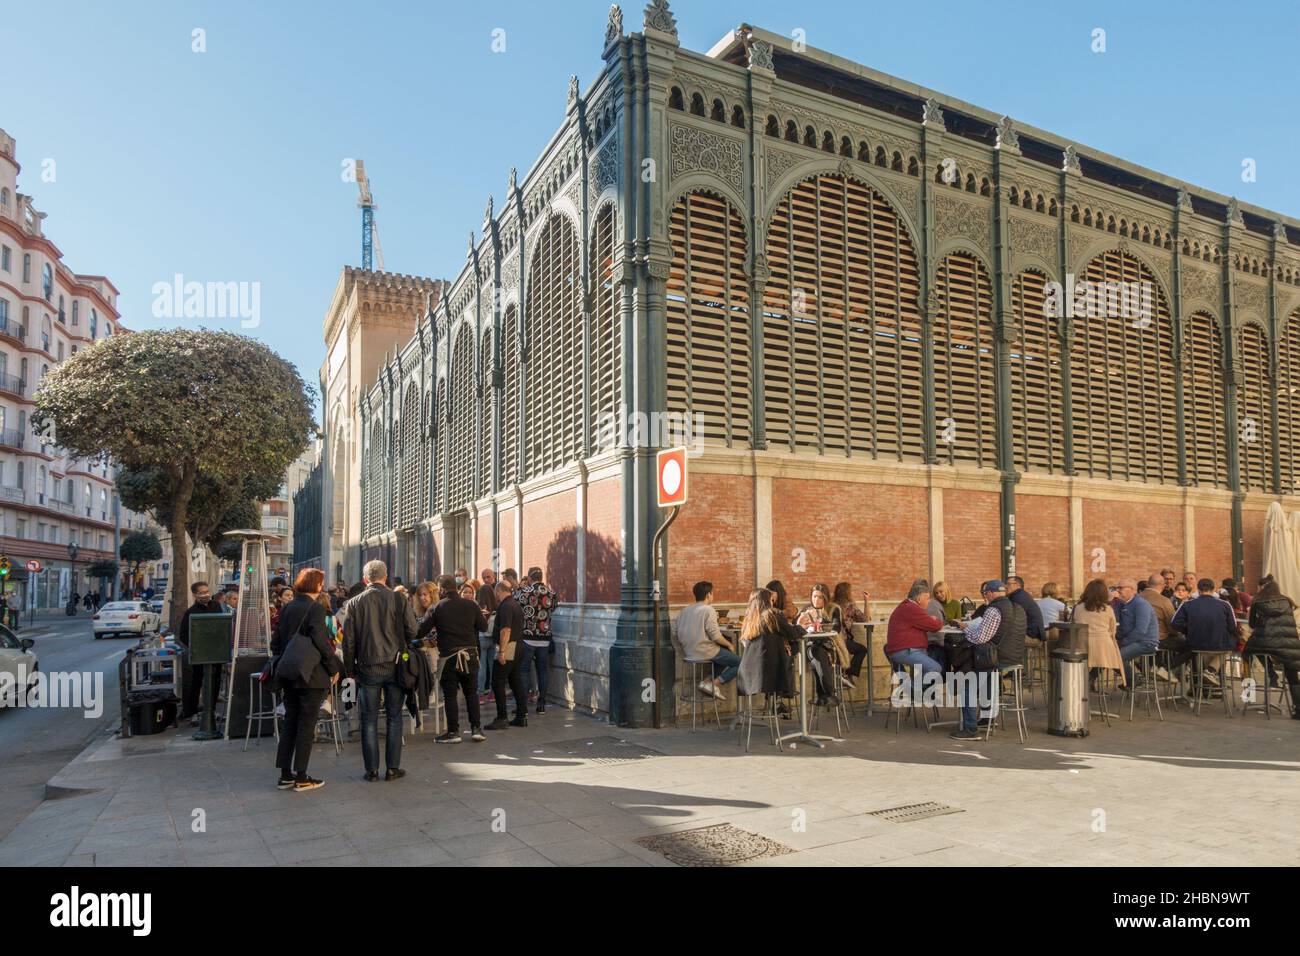 Malaga Spagna. Persone che mangiano alla terrazza esterna di Atarazanas, mercato coperto, Andalusia, Spagna. Foto Stock